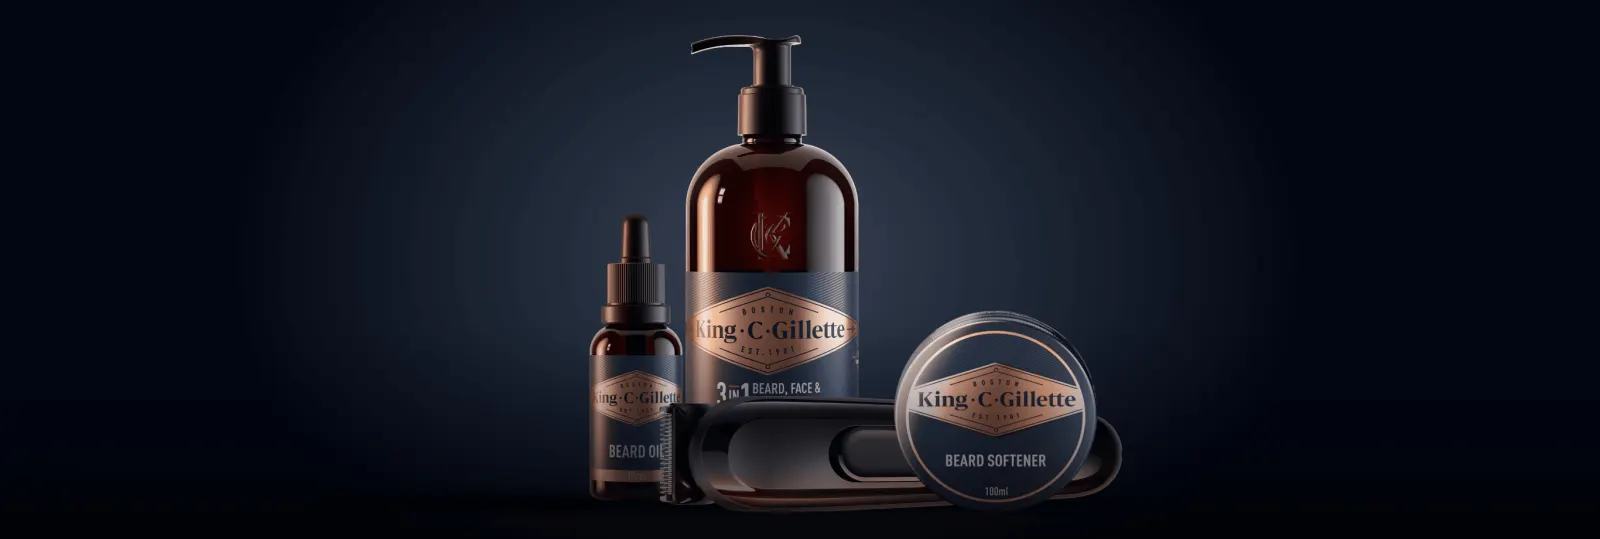 Bartpflegeroutine mit King C. Gillette